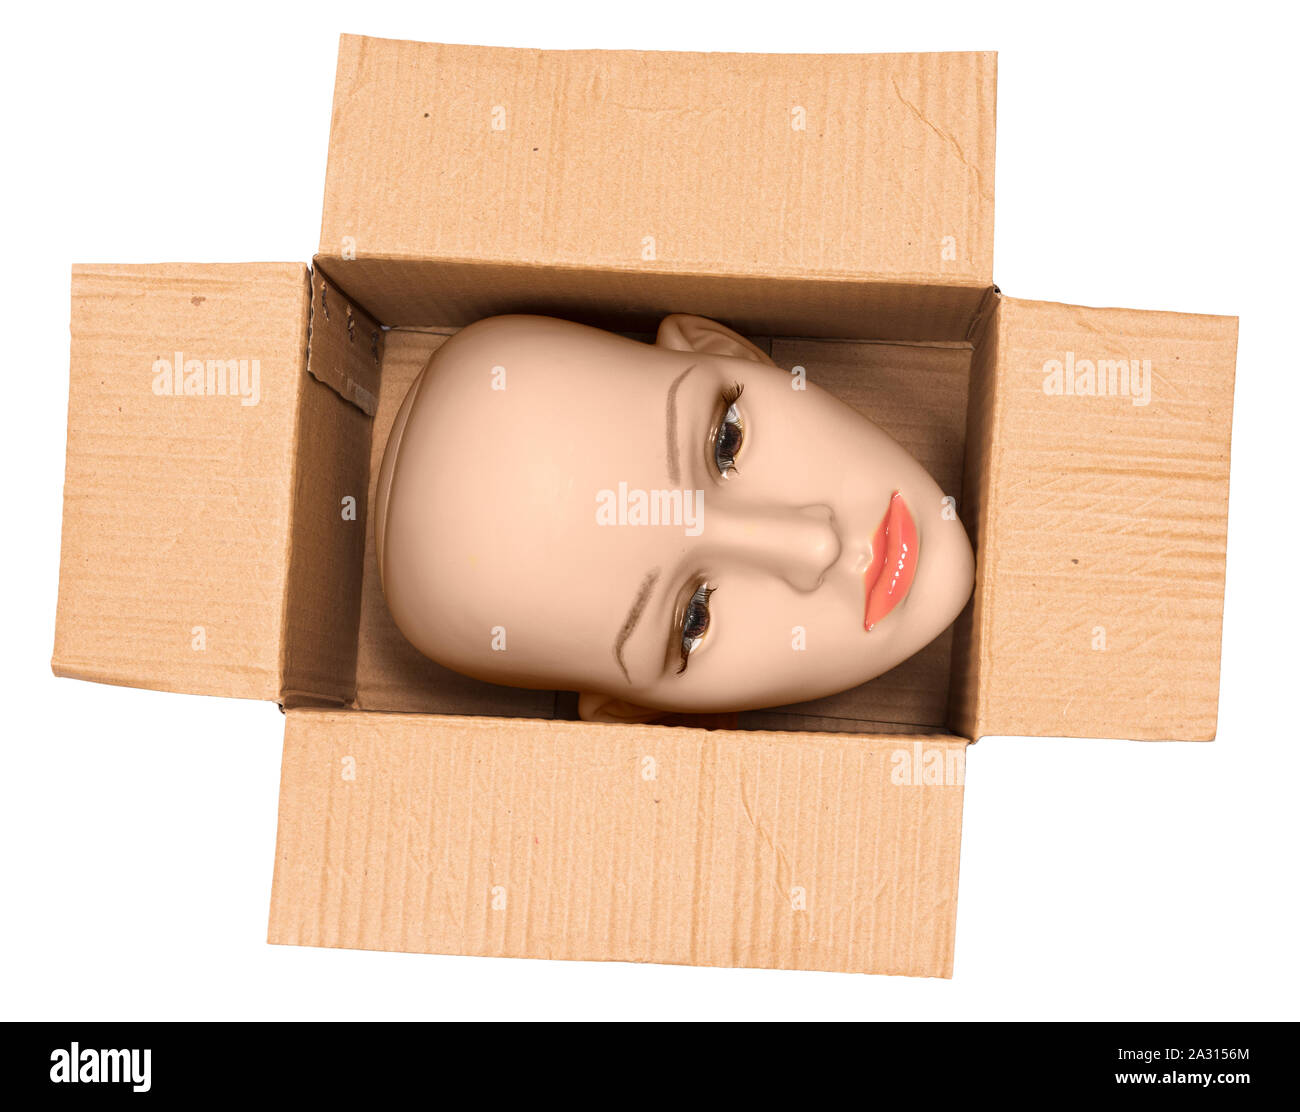 Horizontale Schuß einer Glatze Frau Schaufensterpuppe Kopf innerhalb einer offenen Karton. Die Box wird so gedreht, dass die Kopf seitlich ist. Weißer Hintergrund. Stockfoto